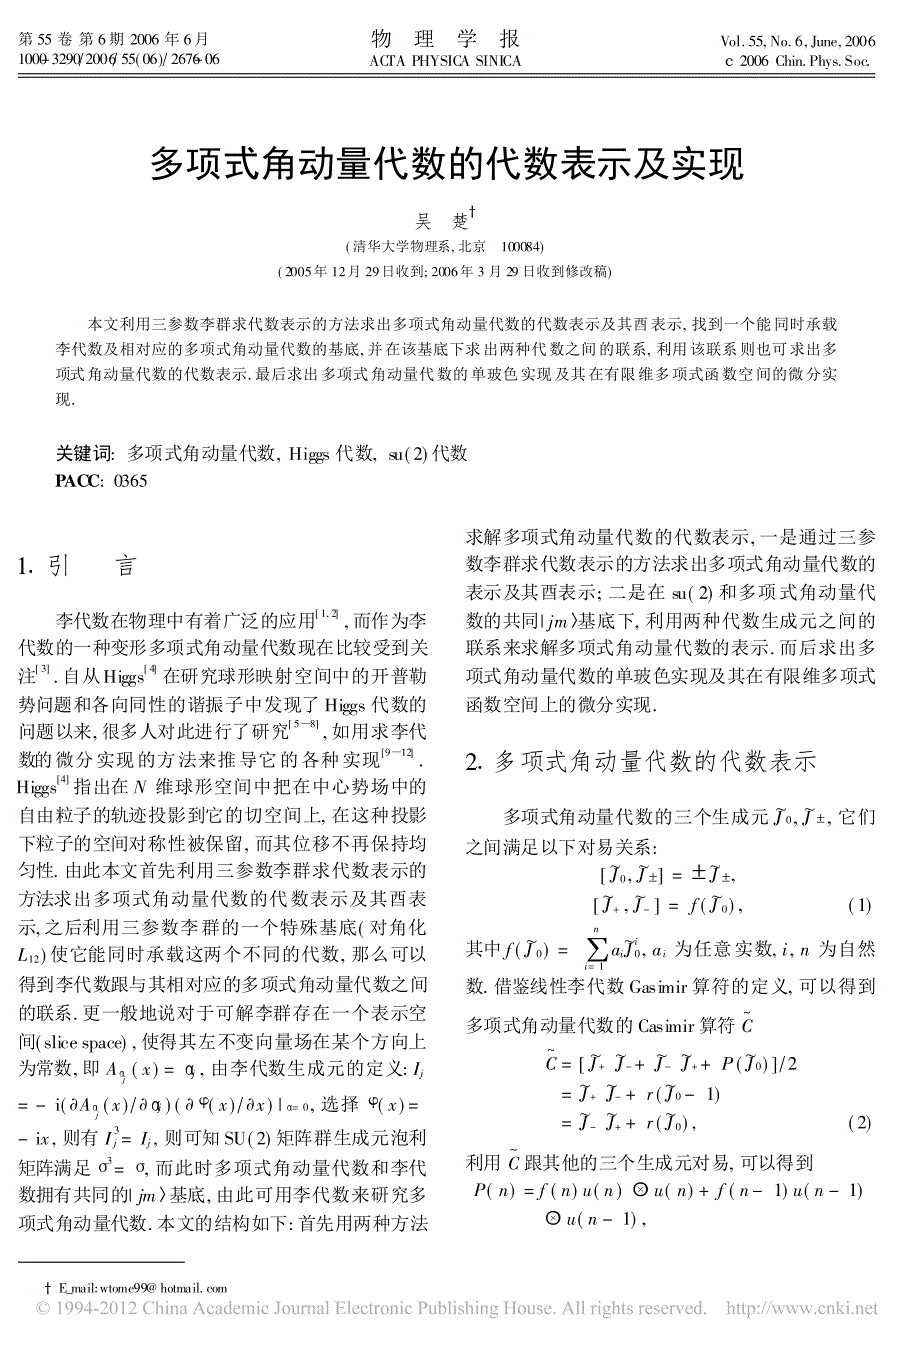 多项式角动量代数的代数表示及实现_第1页